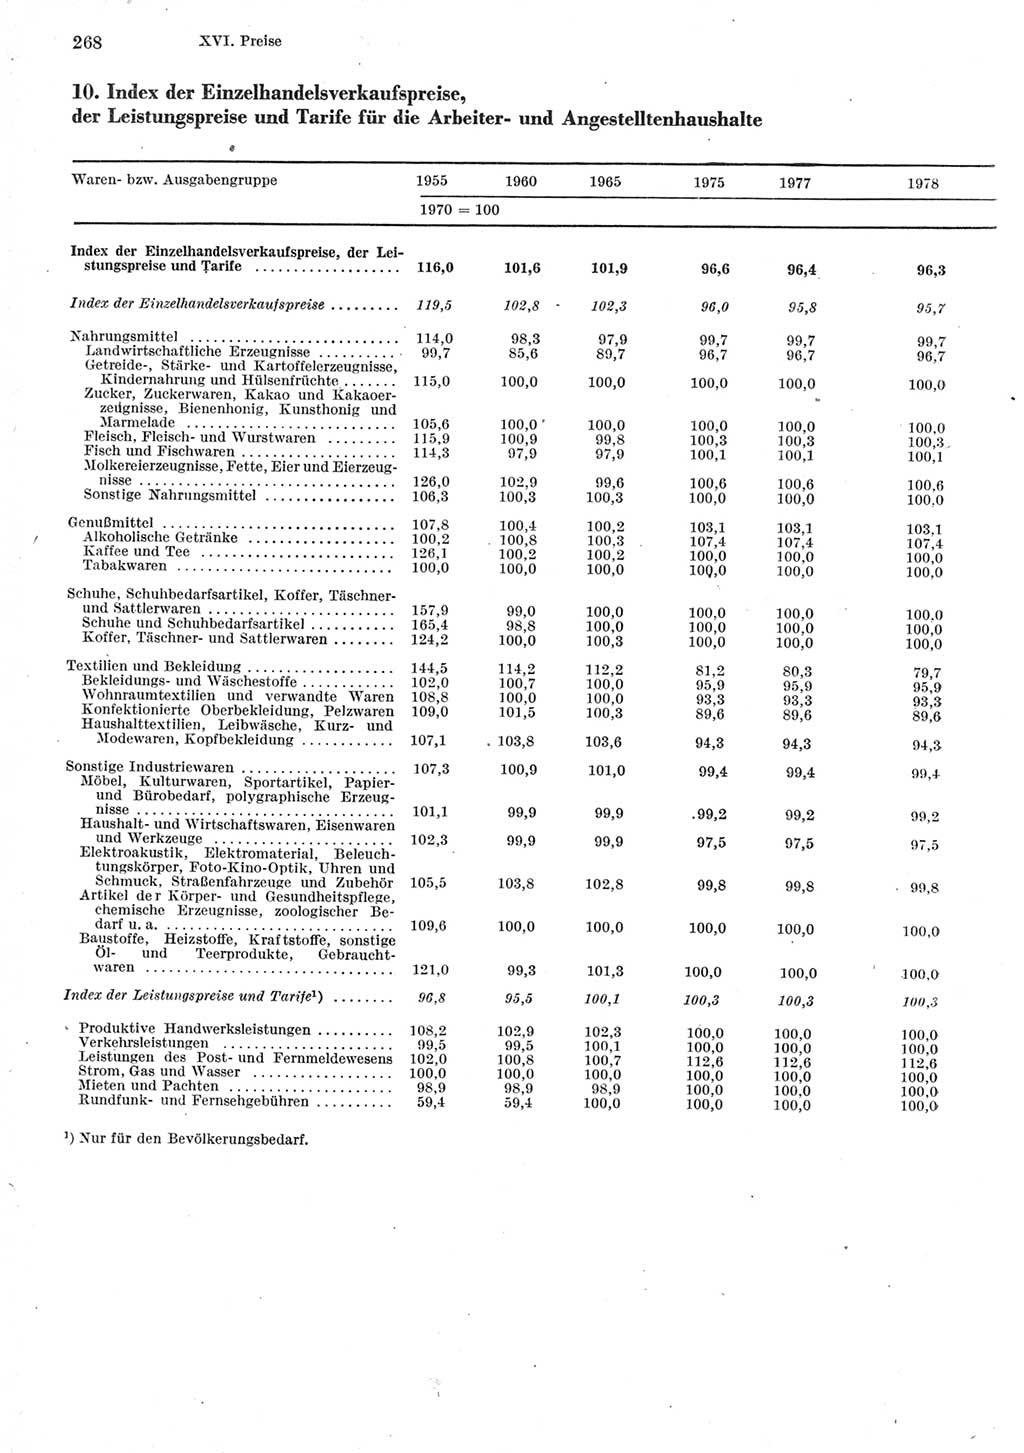 Statistisches Jahrbuch der Deutschen Demokratischen Republik (DDR) 1979, Seite 268 (Stat. Jb. DDR 1979, S. 268)